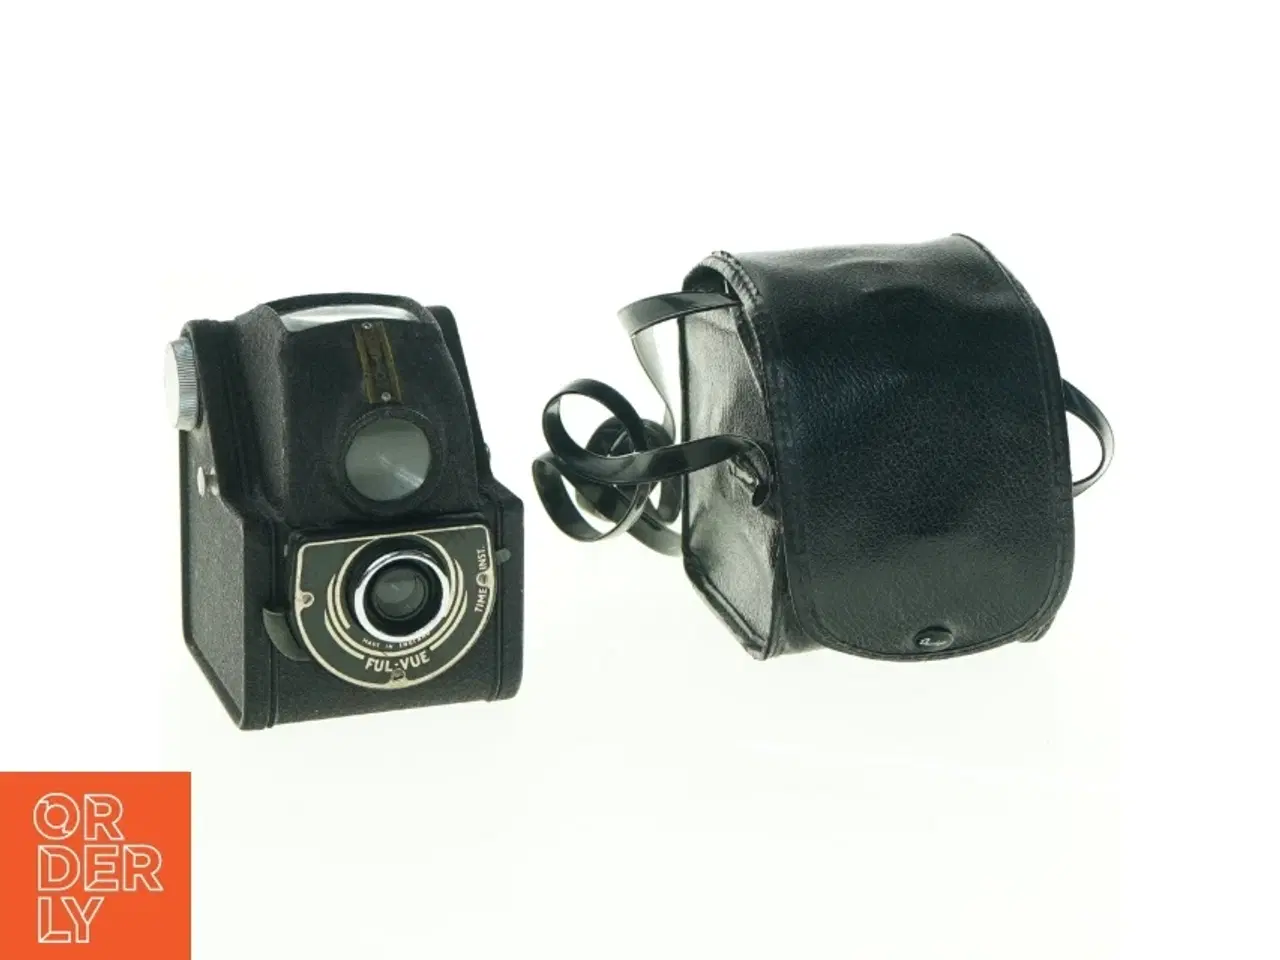 Billede 1 - Vintage Ensign Ful-Vue kamera med læderetui fra Ensign (str. 10 x 8 cm)